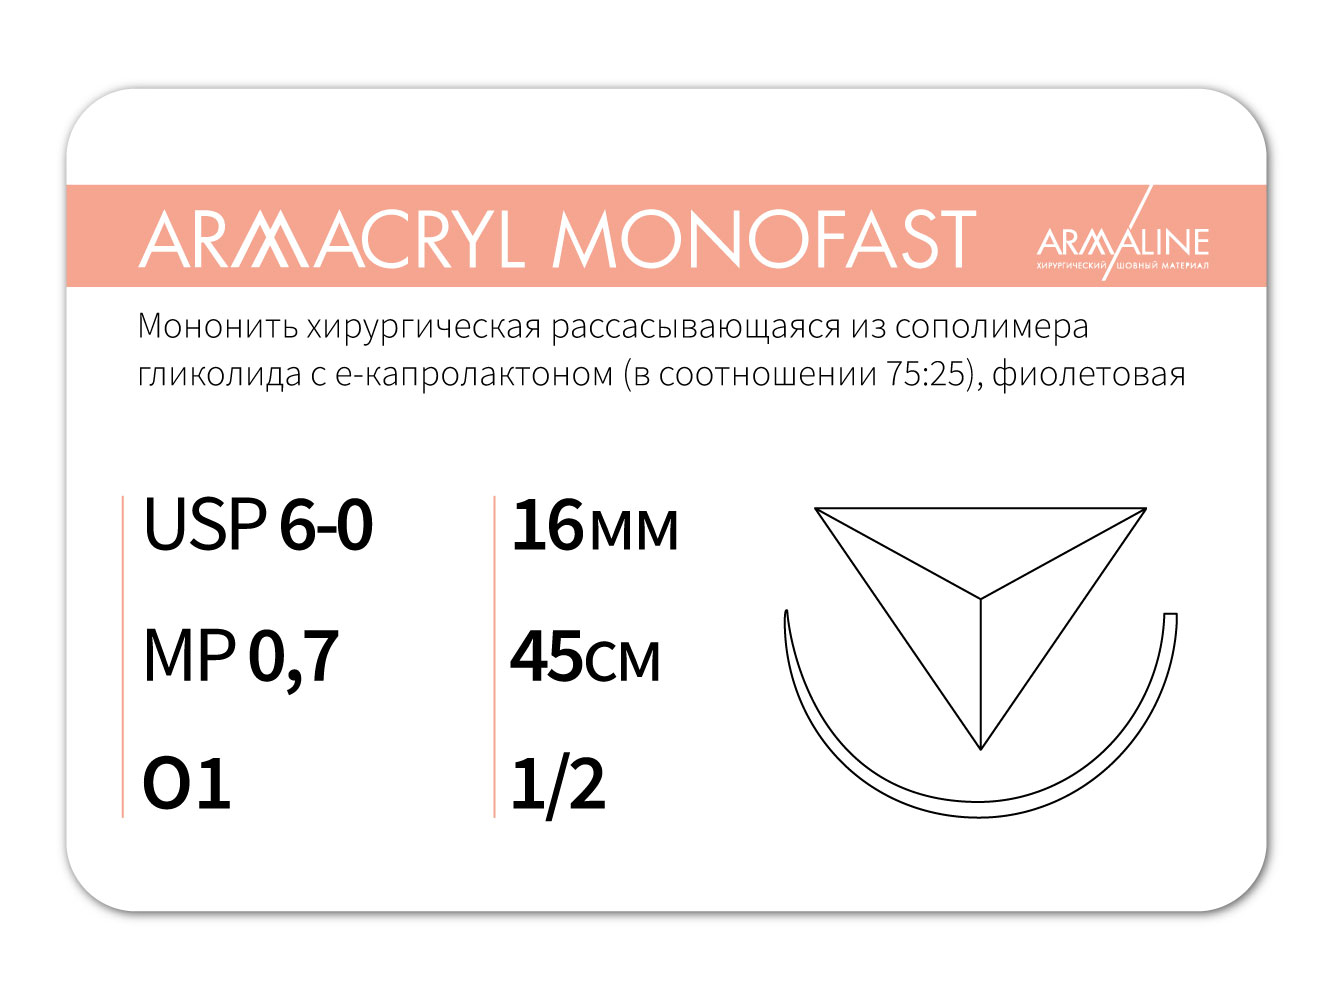 ARMACRYL MONOFAST/Армакрил монофаст (6-0) 45 см - материал хирургический шовный стерильный с атравматической обратно-режущей иглой